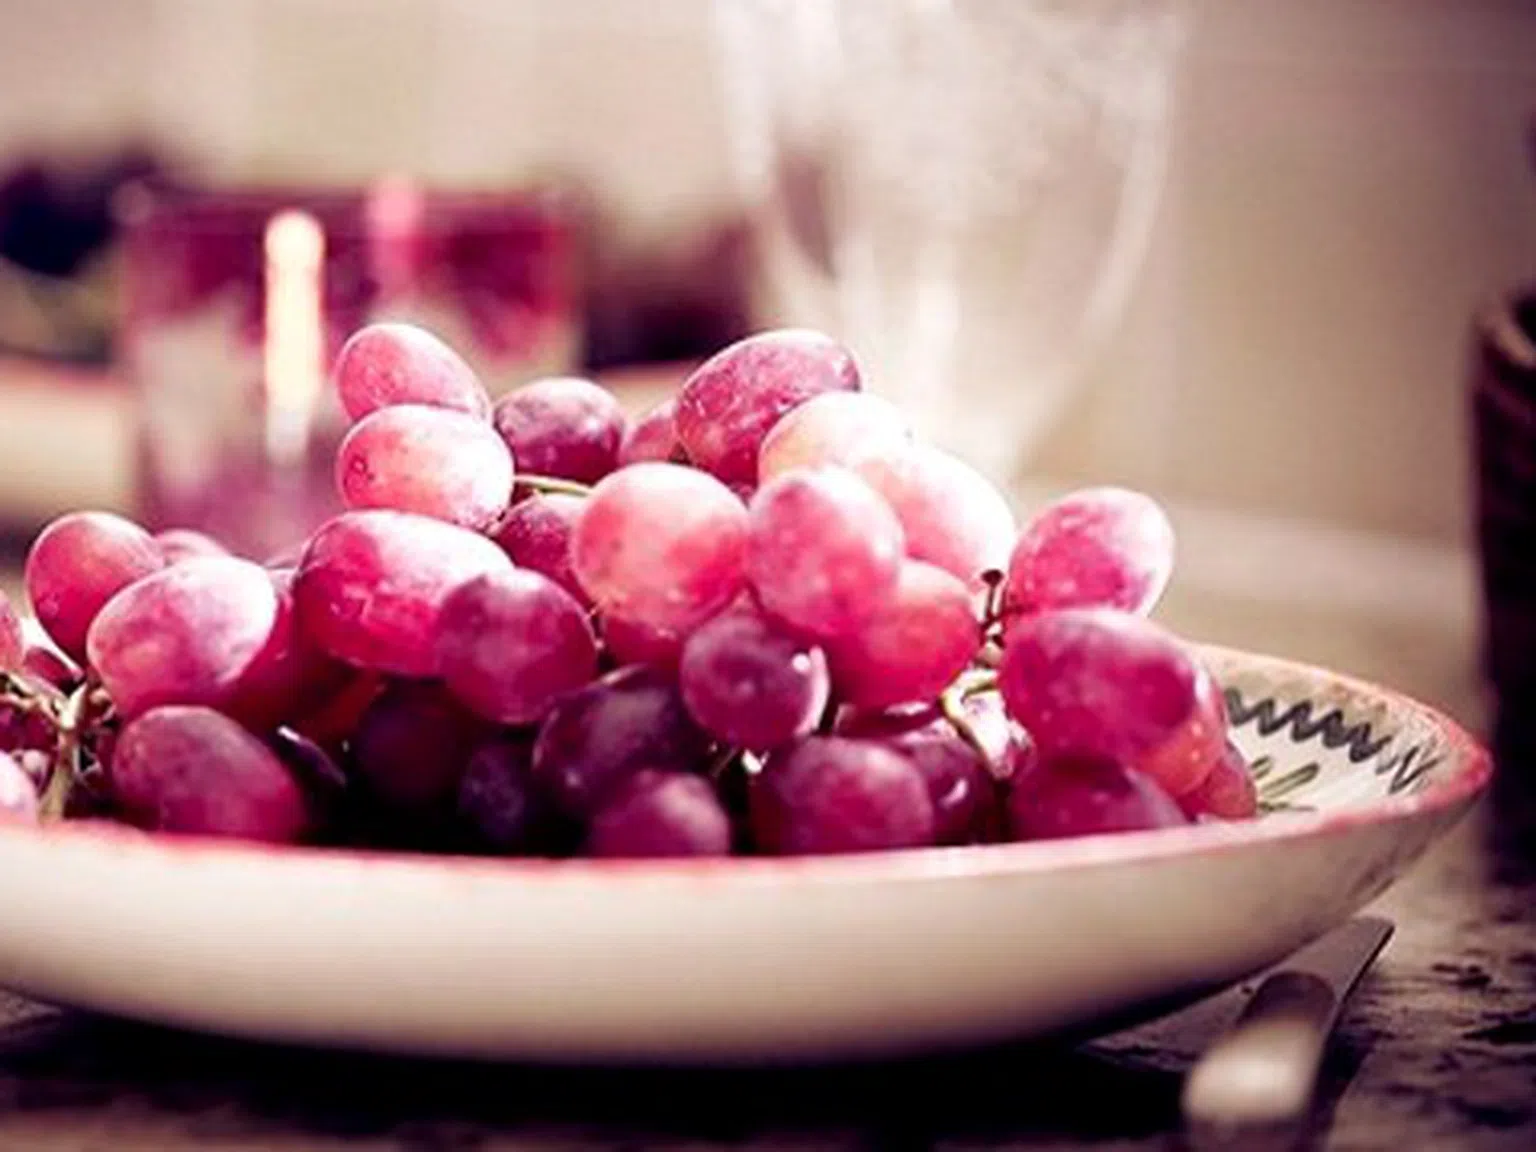 Червено вино и грозде срещу затлъстяване